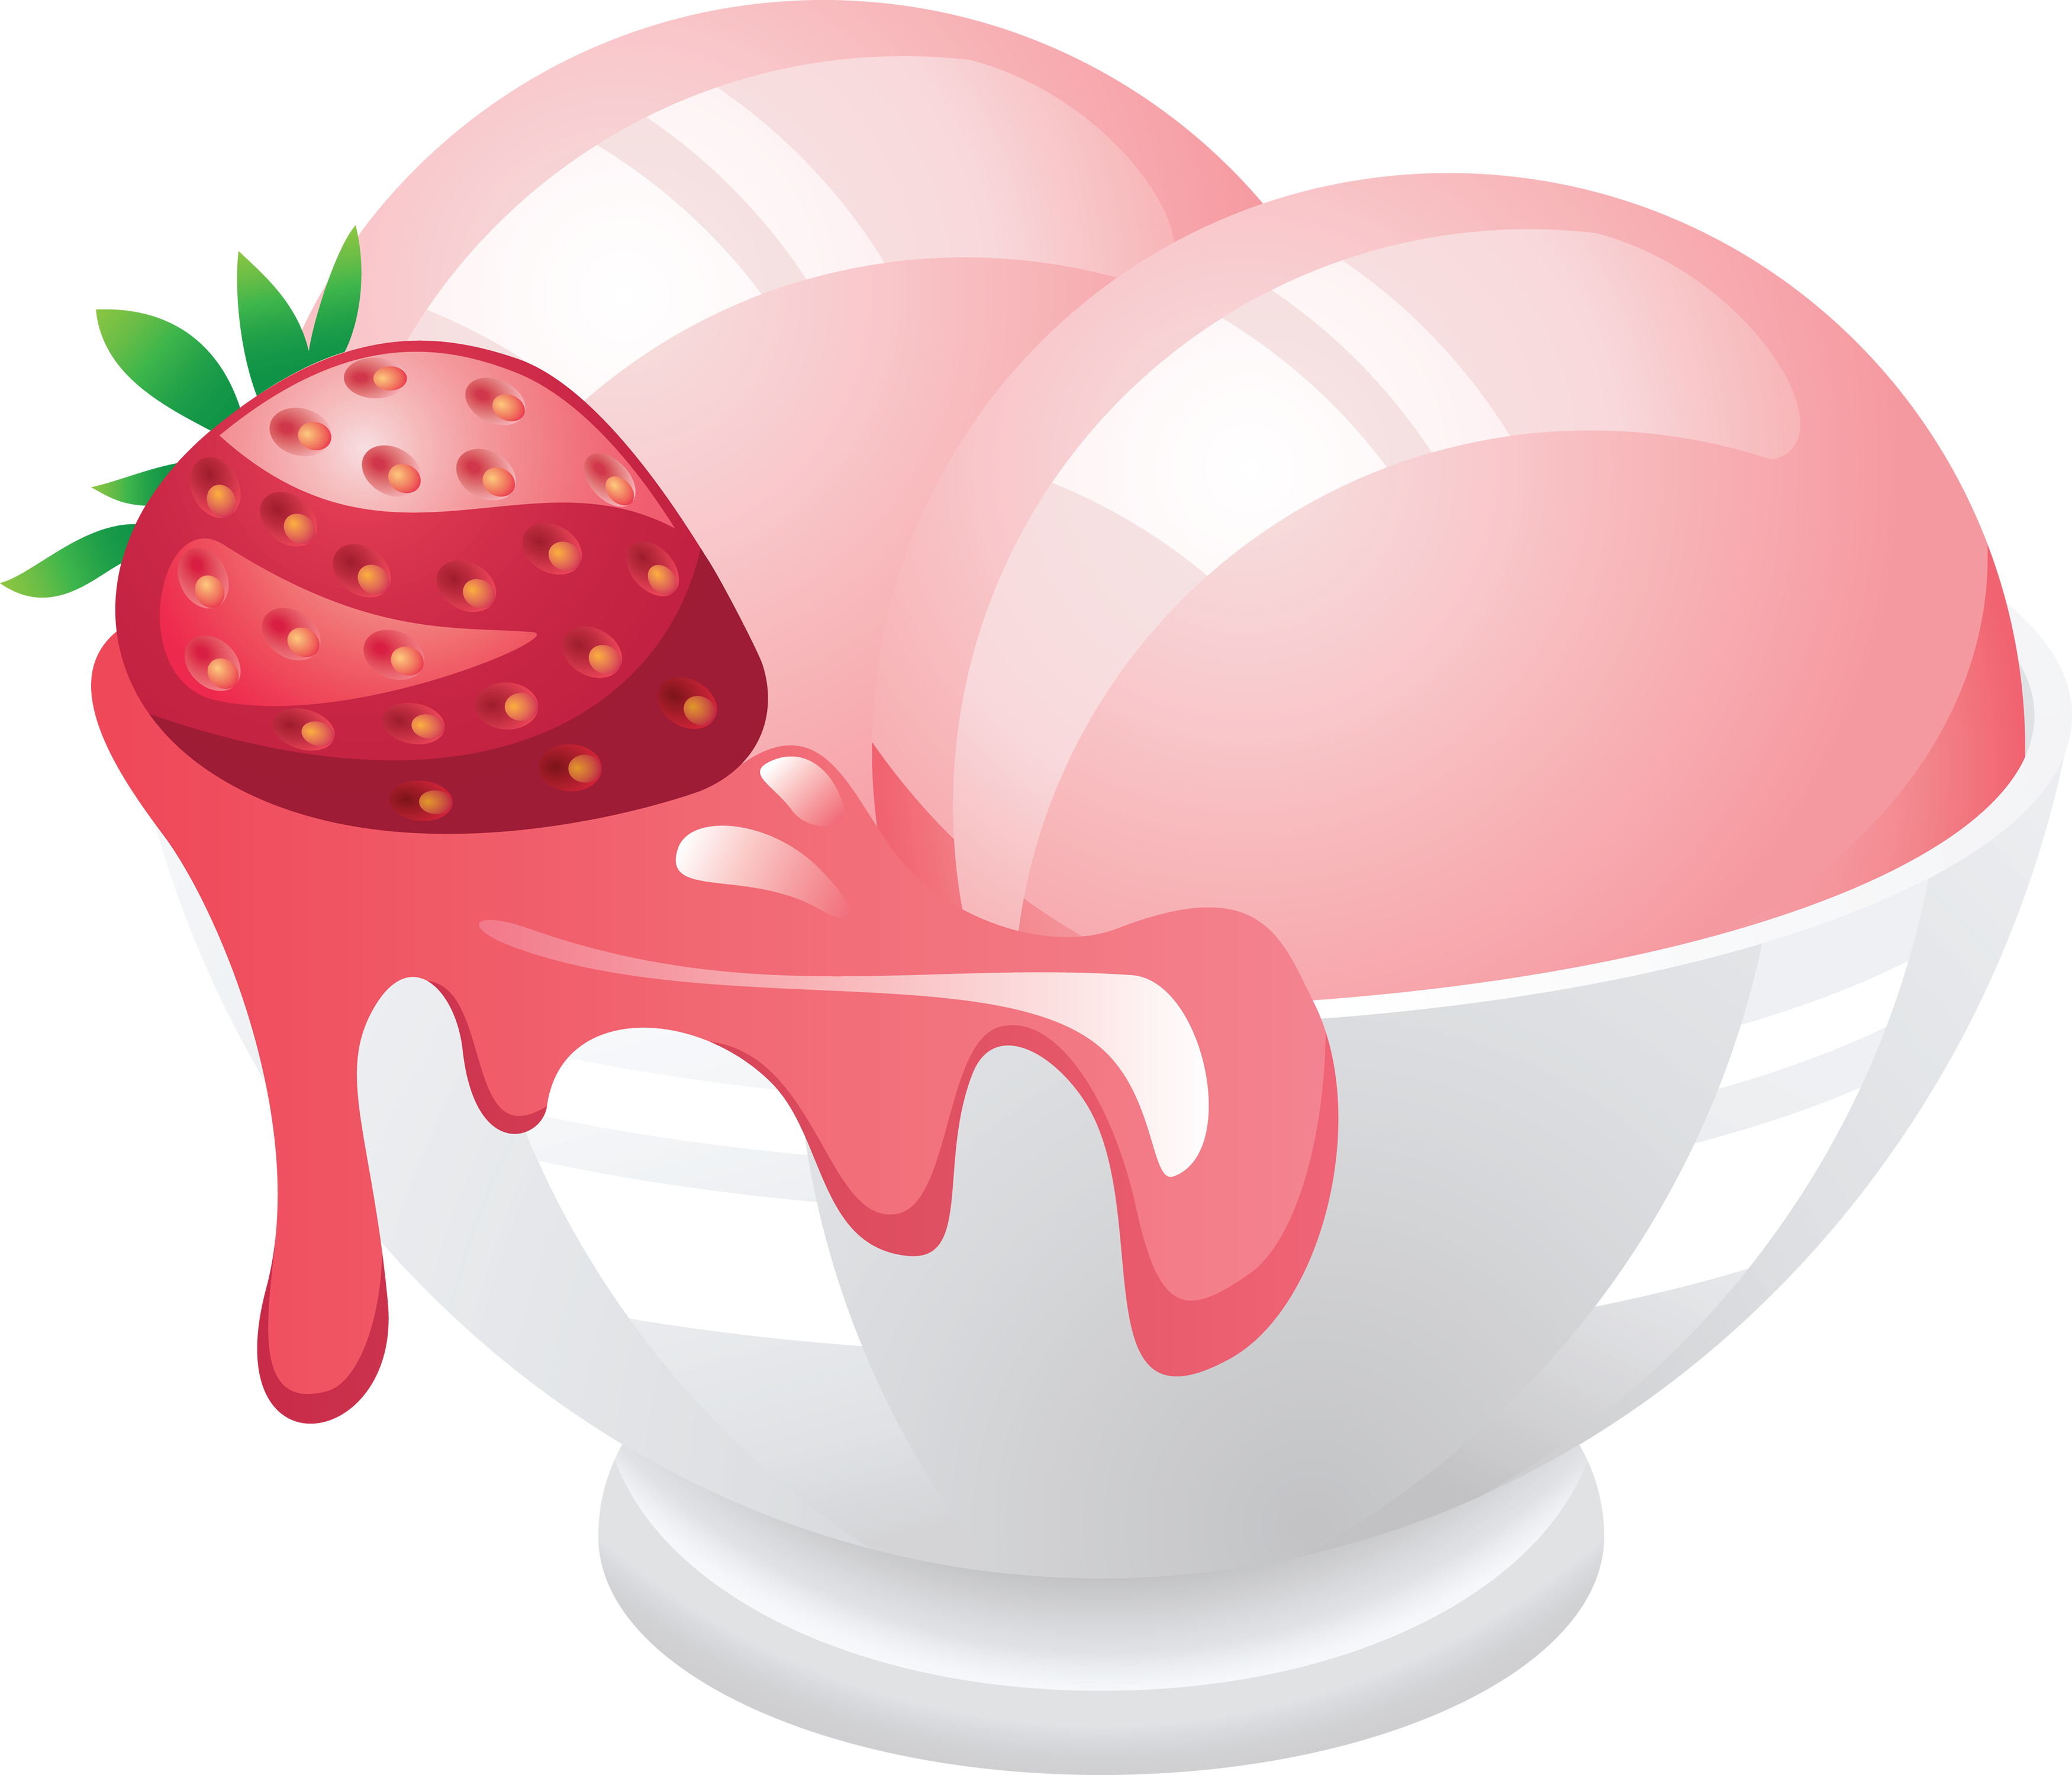 Icecream strawberry